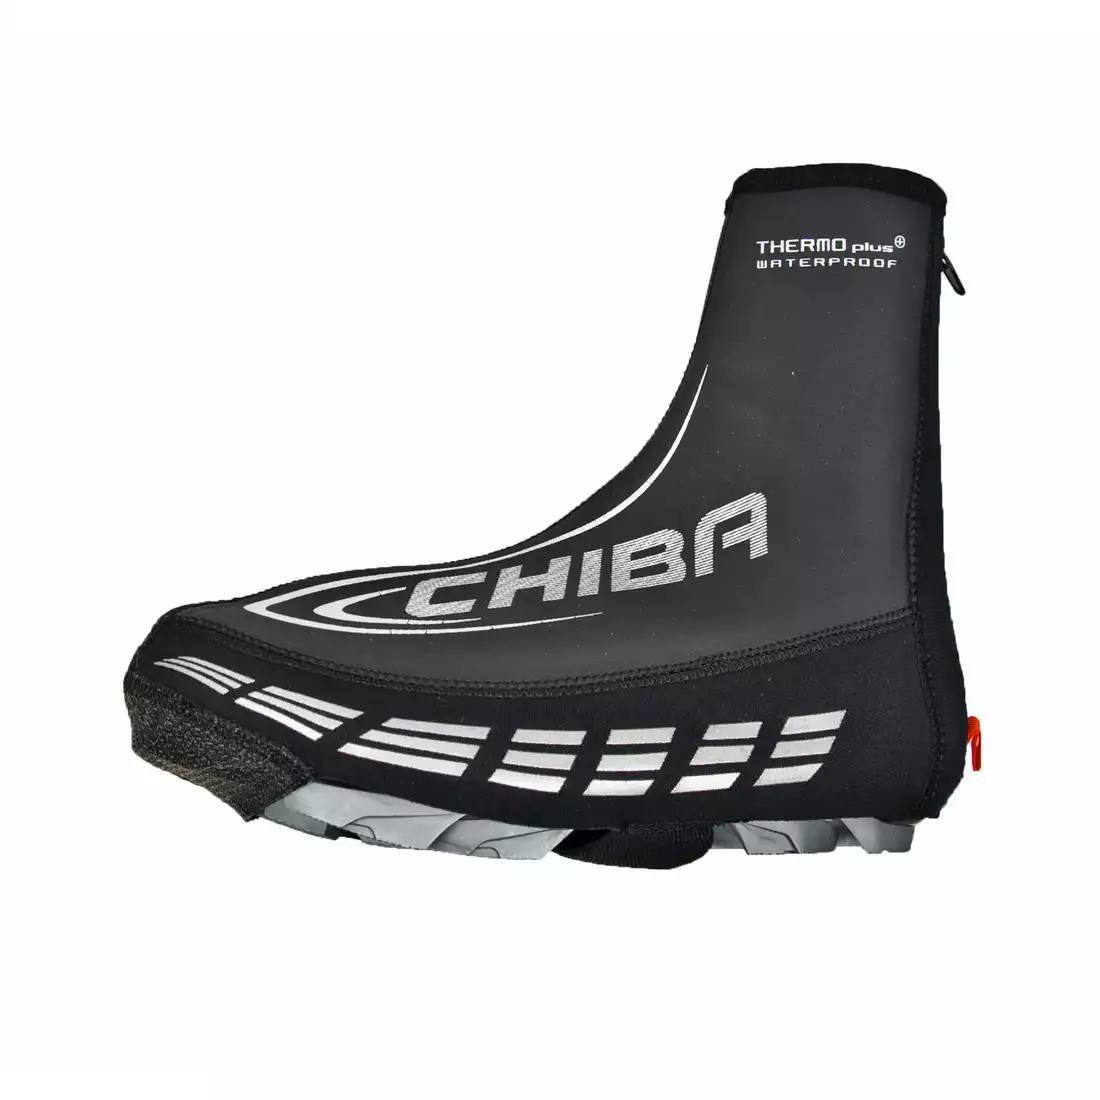 CHIBA THERMO wodoodporne ochraniacze na buty rowerowe 31433